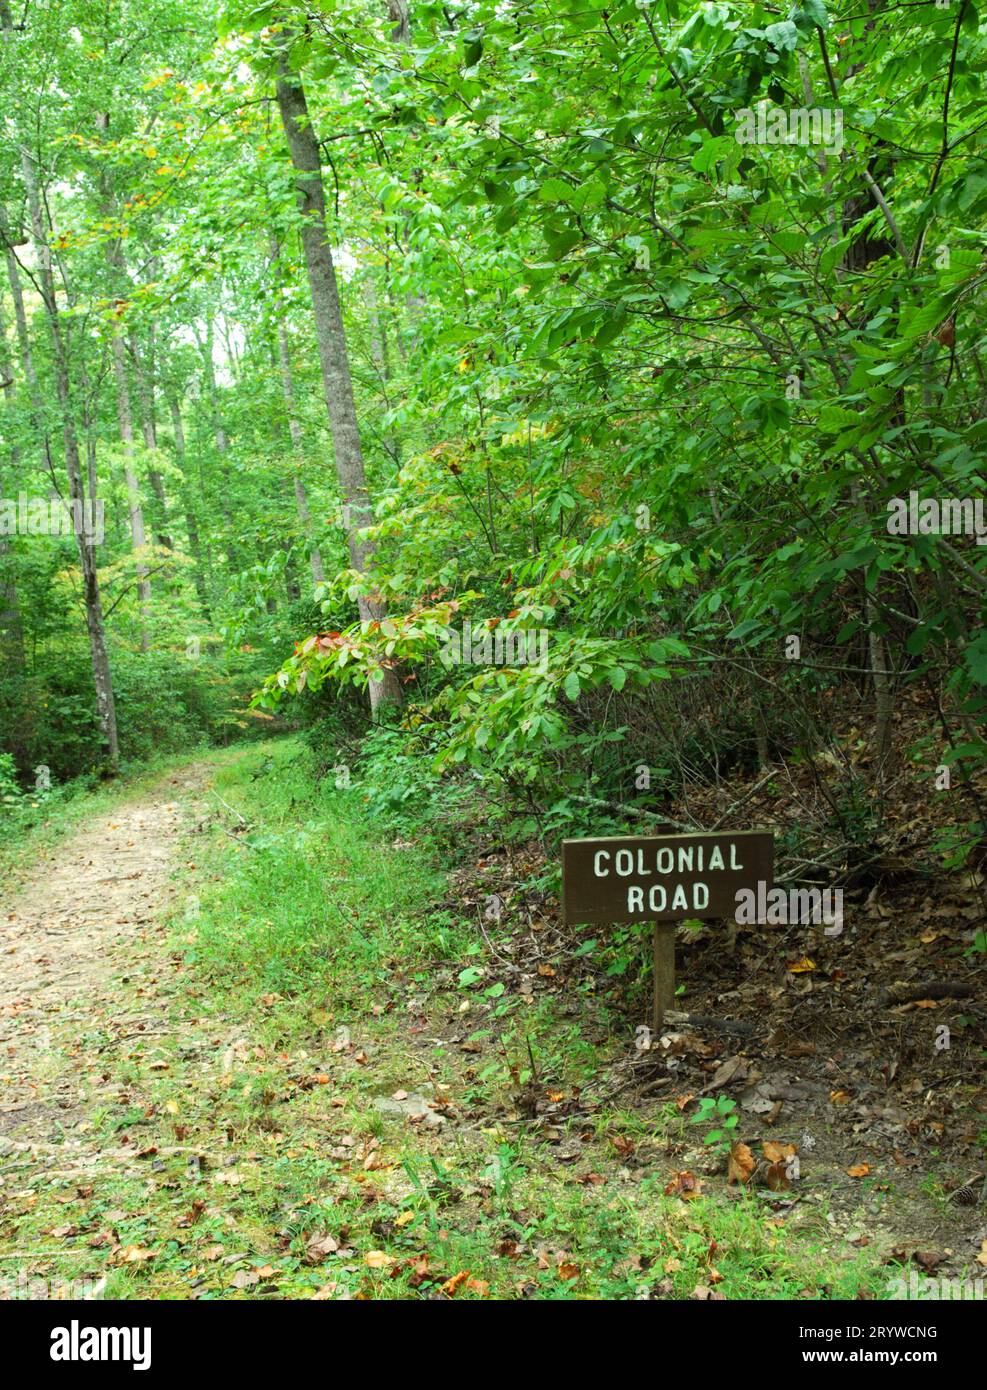 La foto mostra il cartello della Colonial Road accanto al sentiero escursionistico presso il Kings Mountain National Military Park, South Carolina USA. Foto Stock